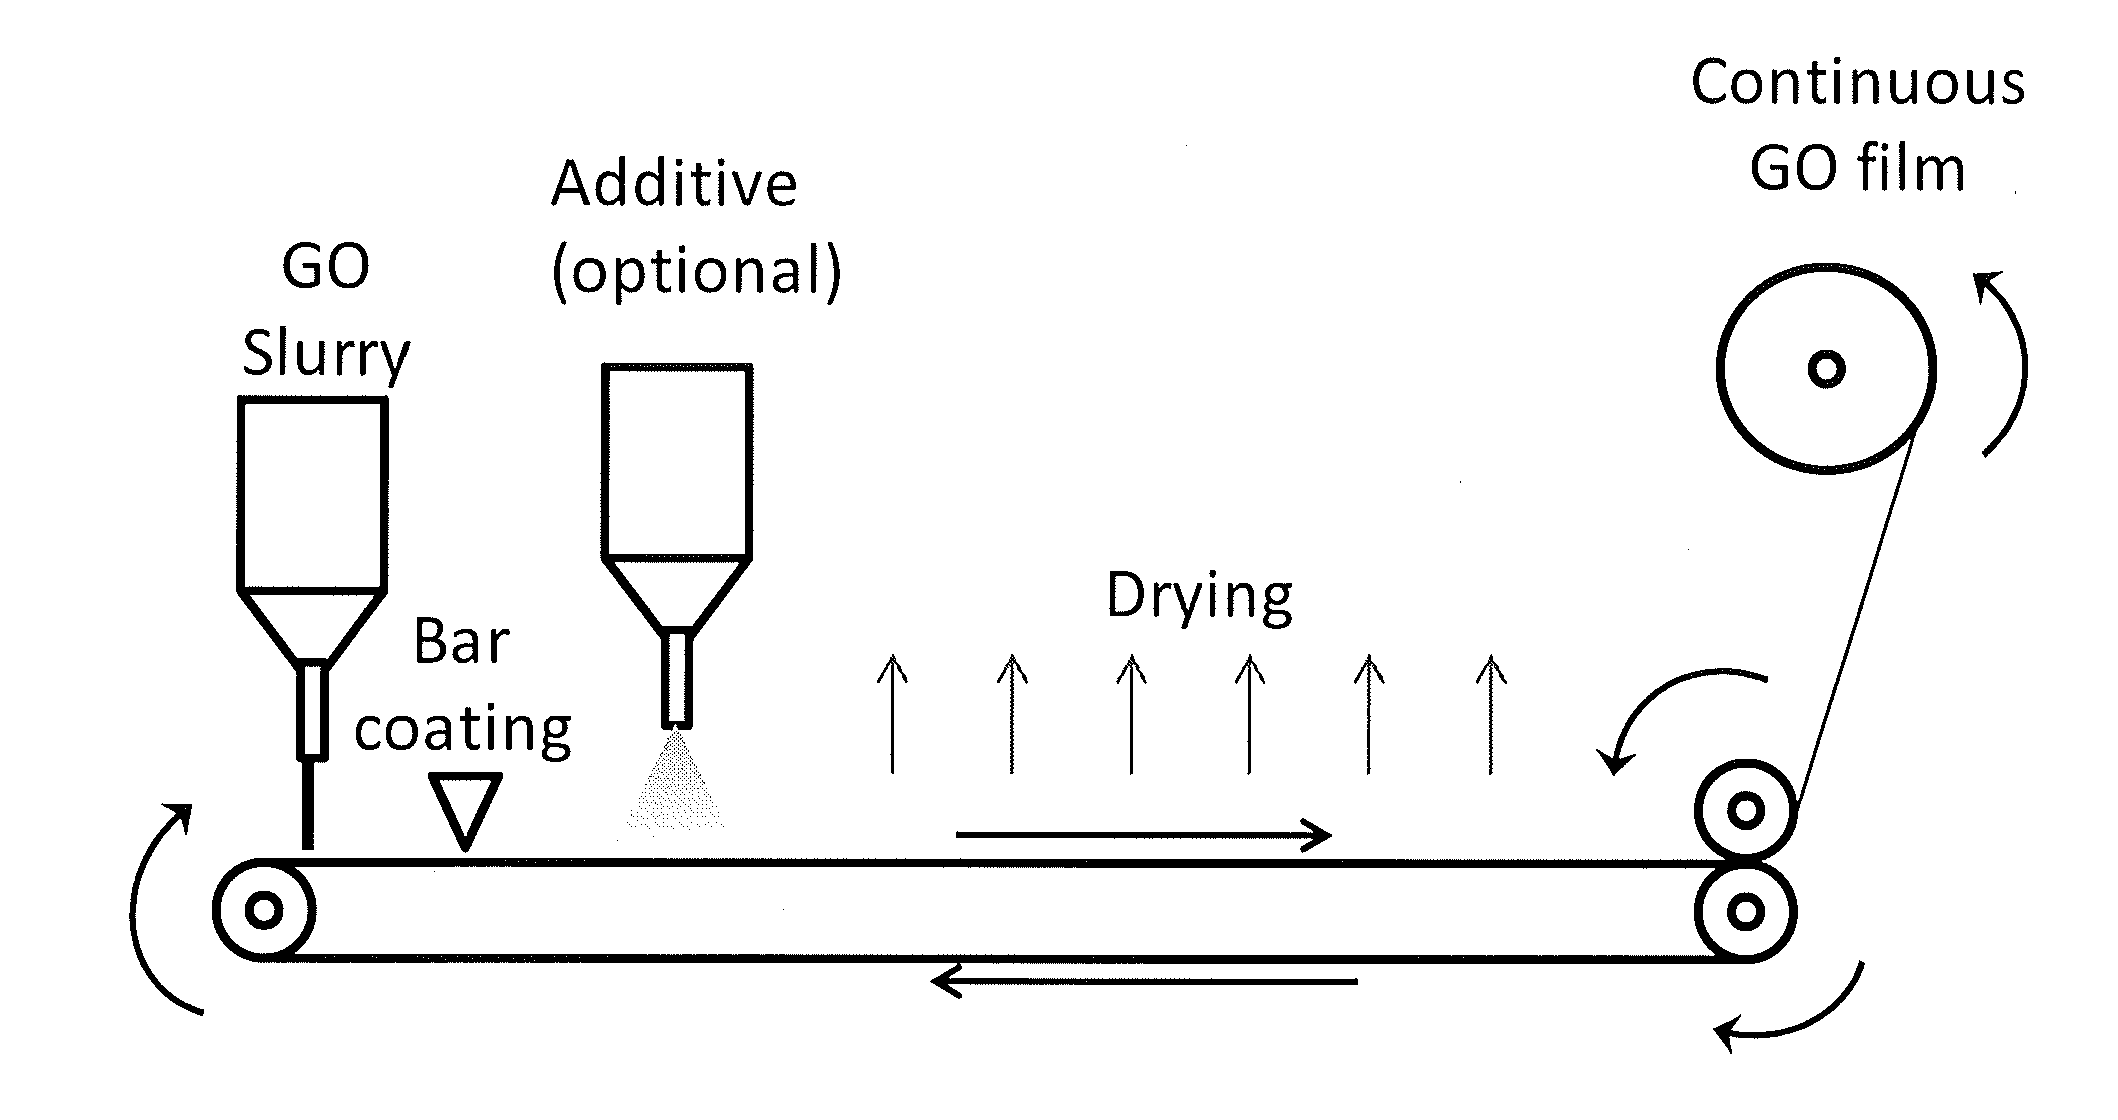 Method for preparing graphene oxide films and fibers